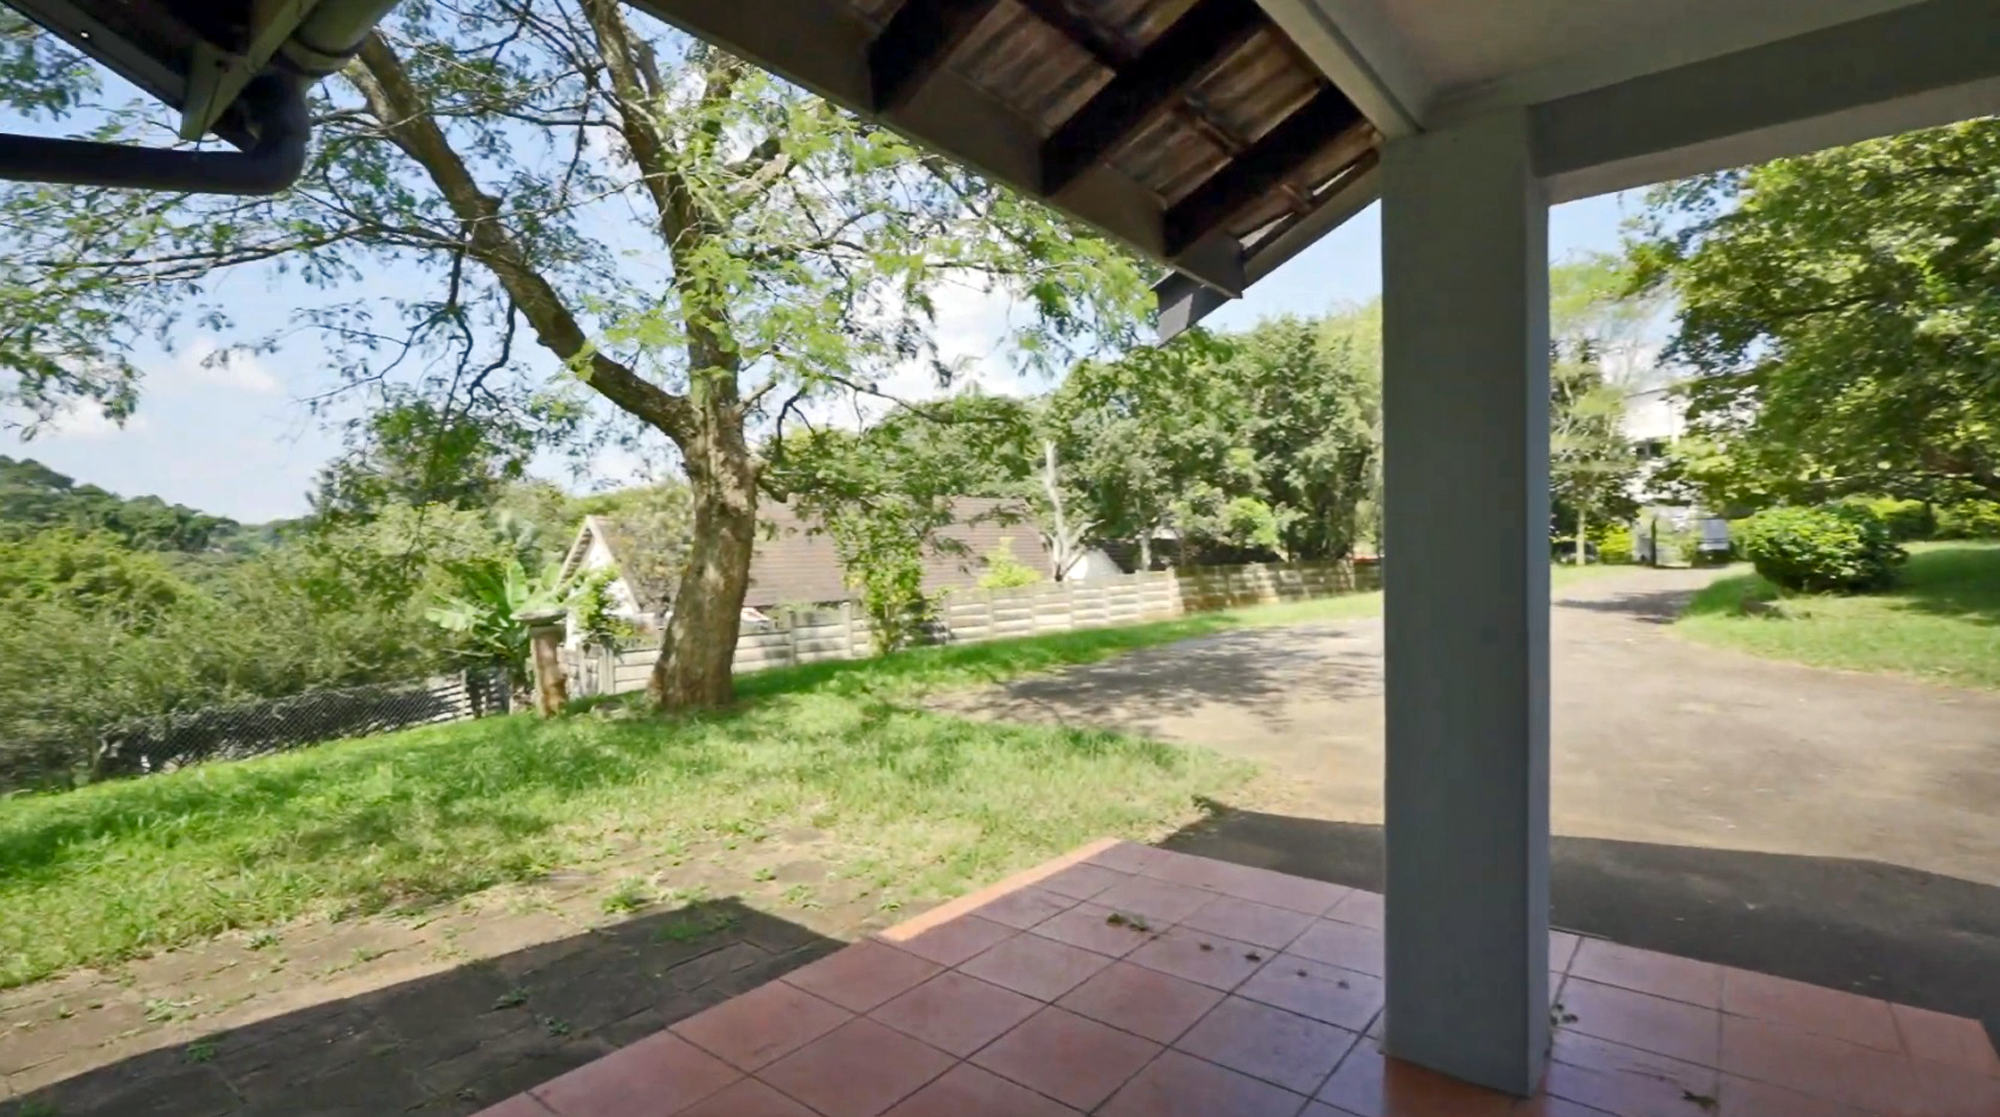 3 Bedroom Property for Sale in Waterfall KwaZulu-Natal